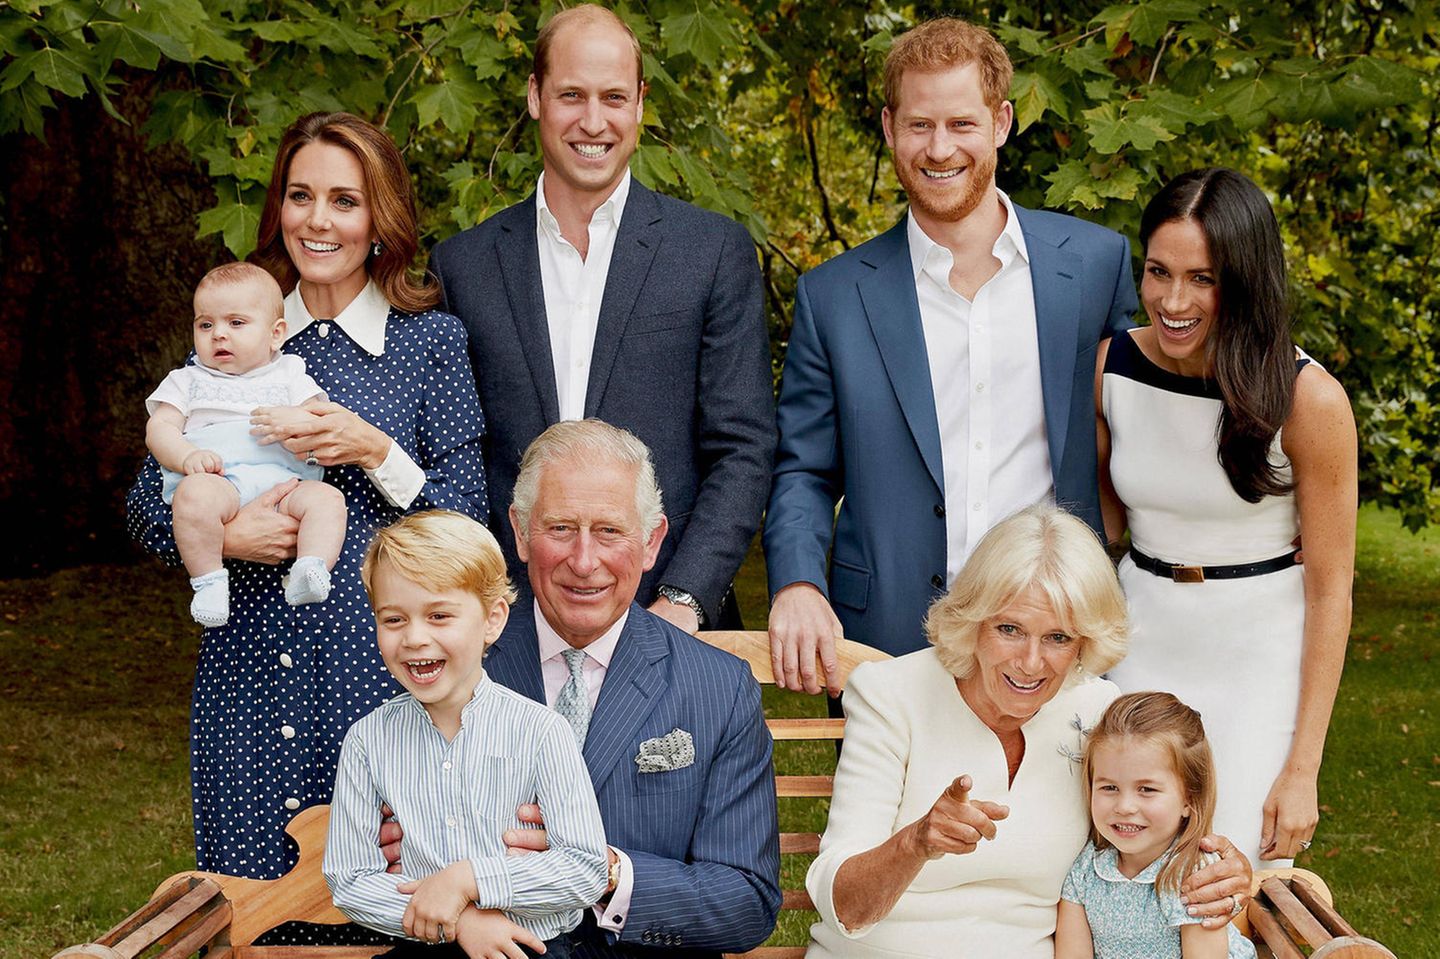 Prinz Charles hat seine Enkel George, Charlotte und Louis während des Familienporträts gut unterhalten